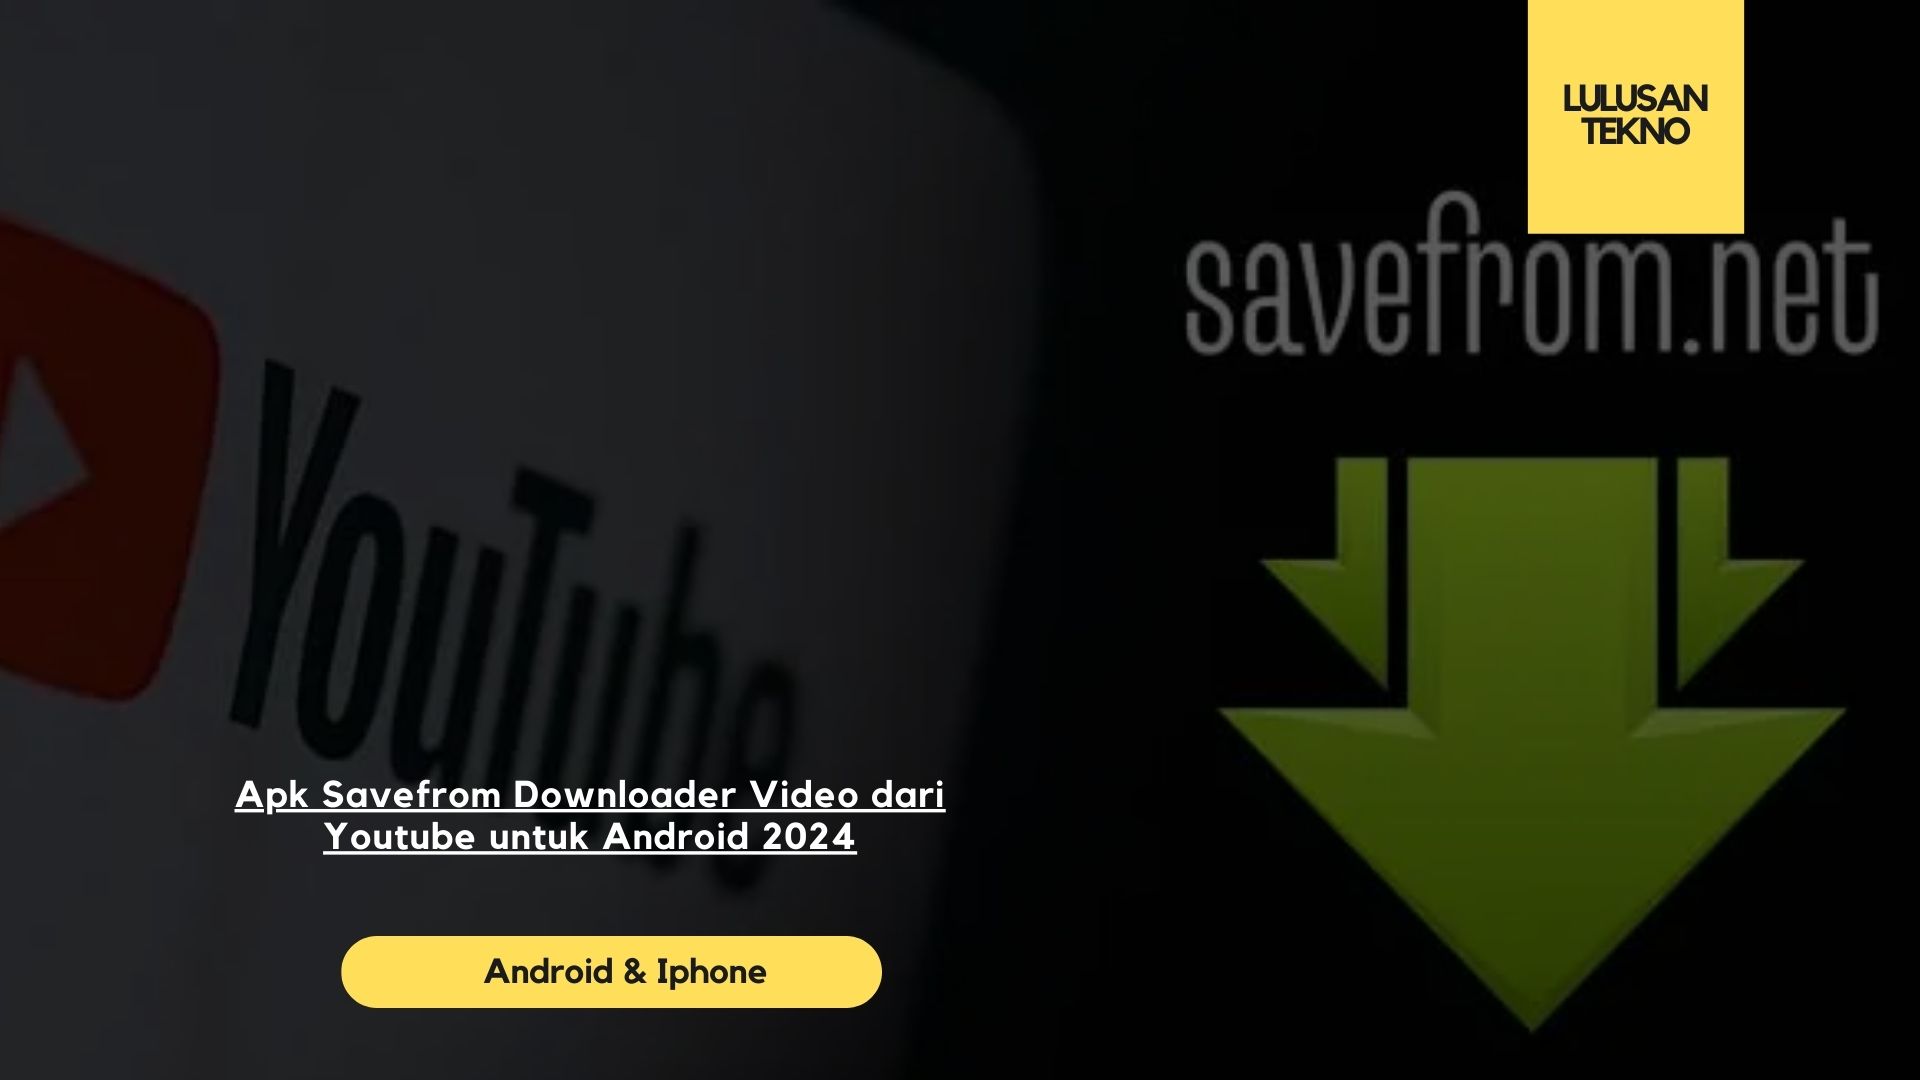 Apk Savefrom Downloader Video dari Youtube untuk Android 2024